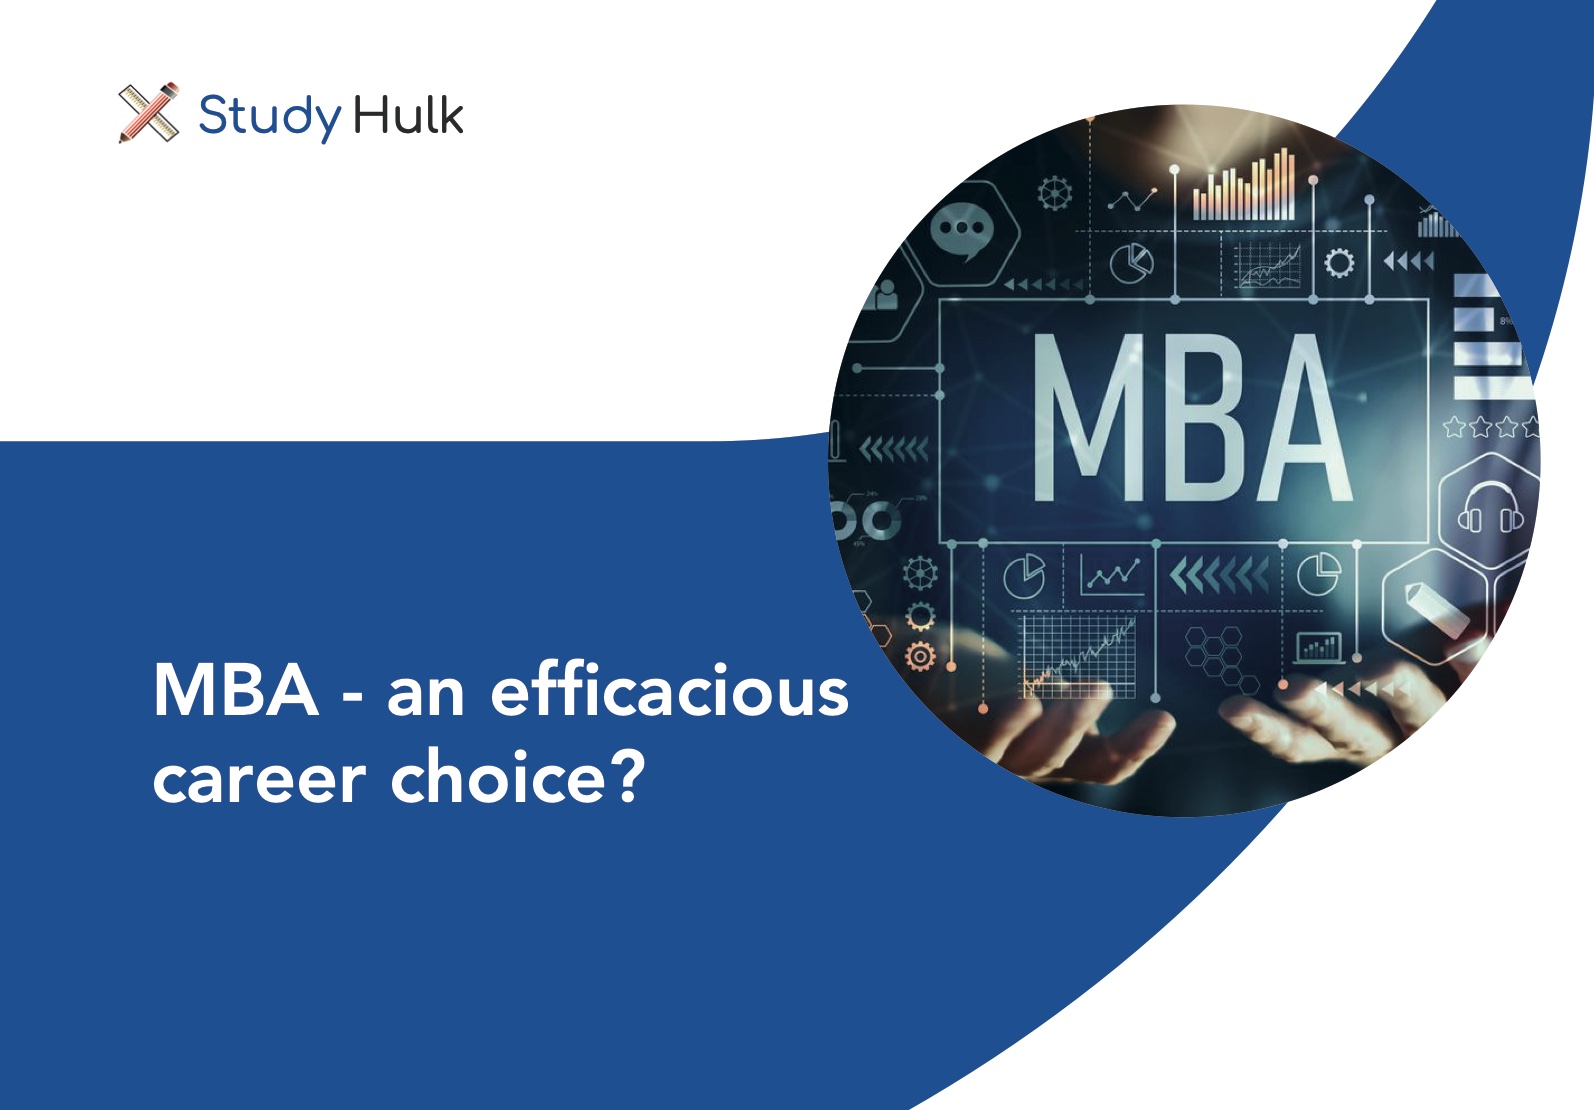 Blog post for MBA an efficacious career choice?